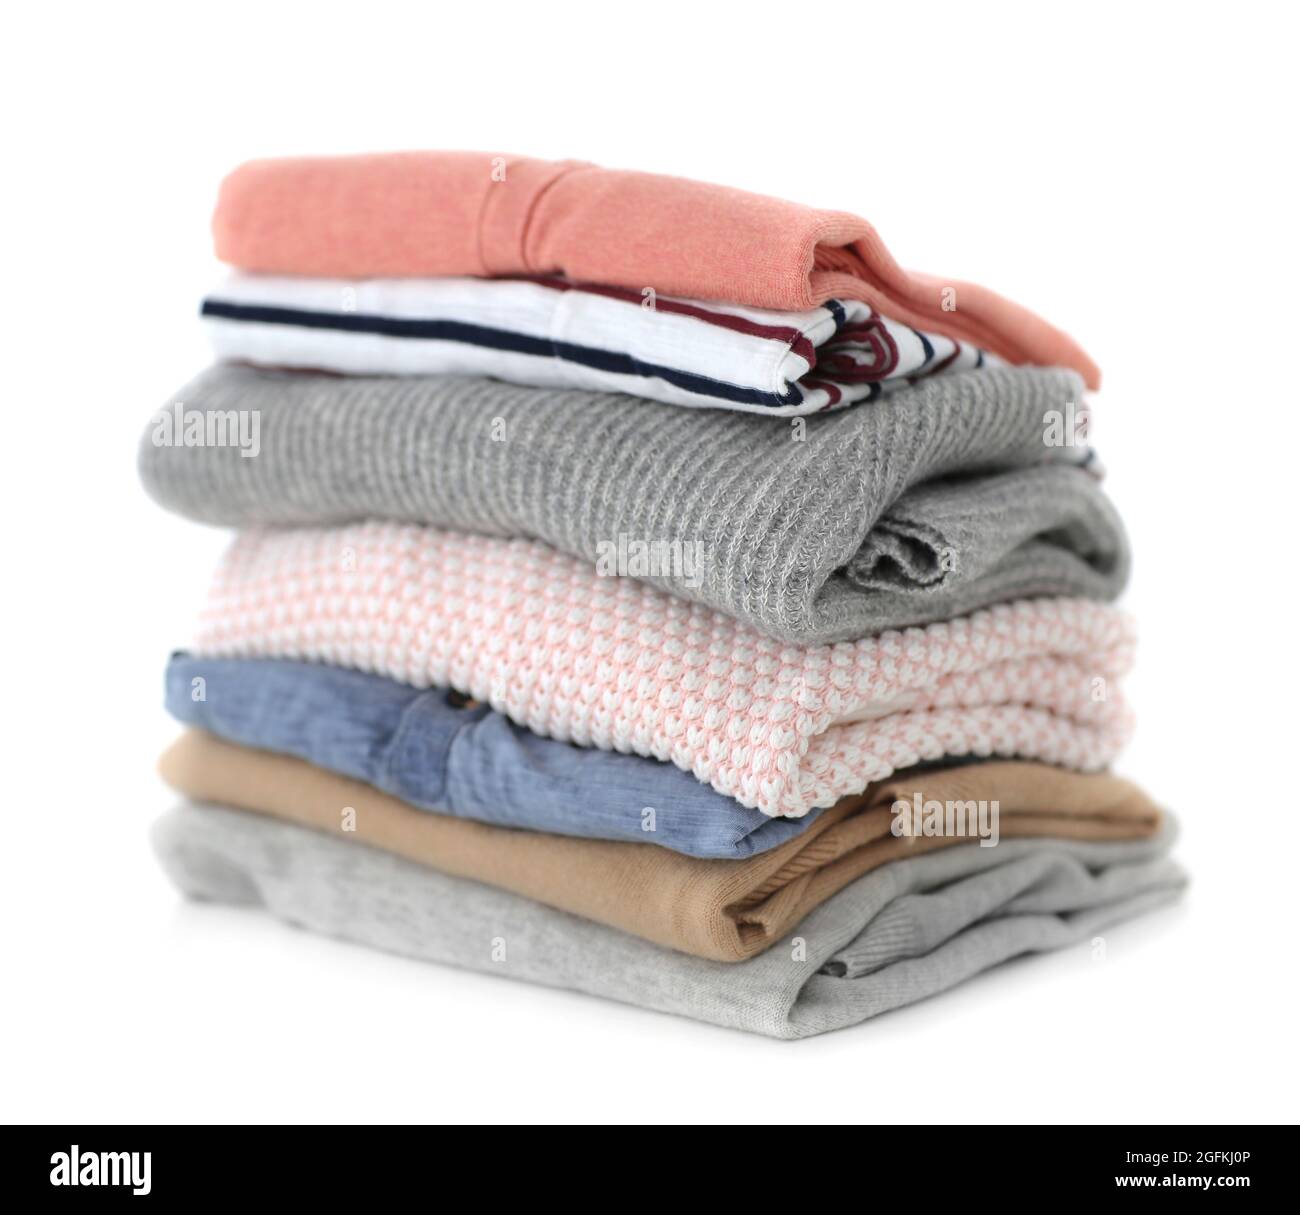 Pile de vêtements sur la table Photo Stock - Alamy